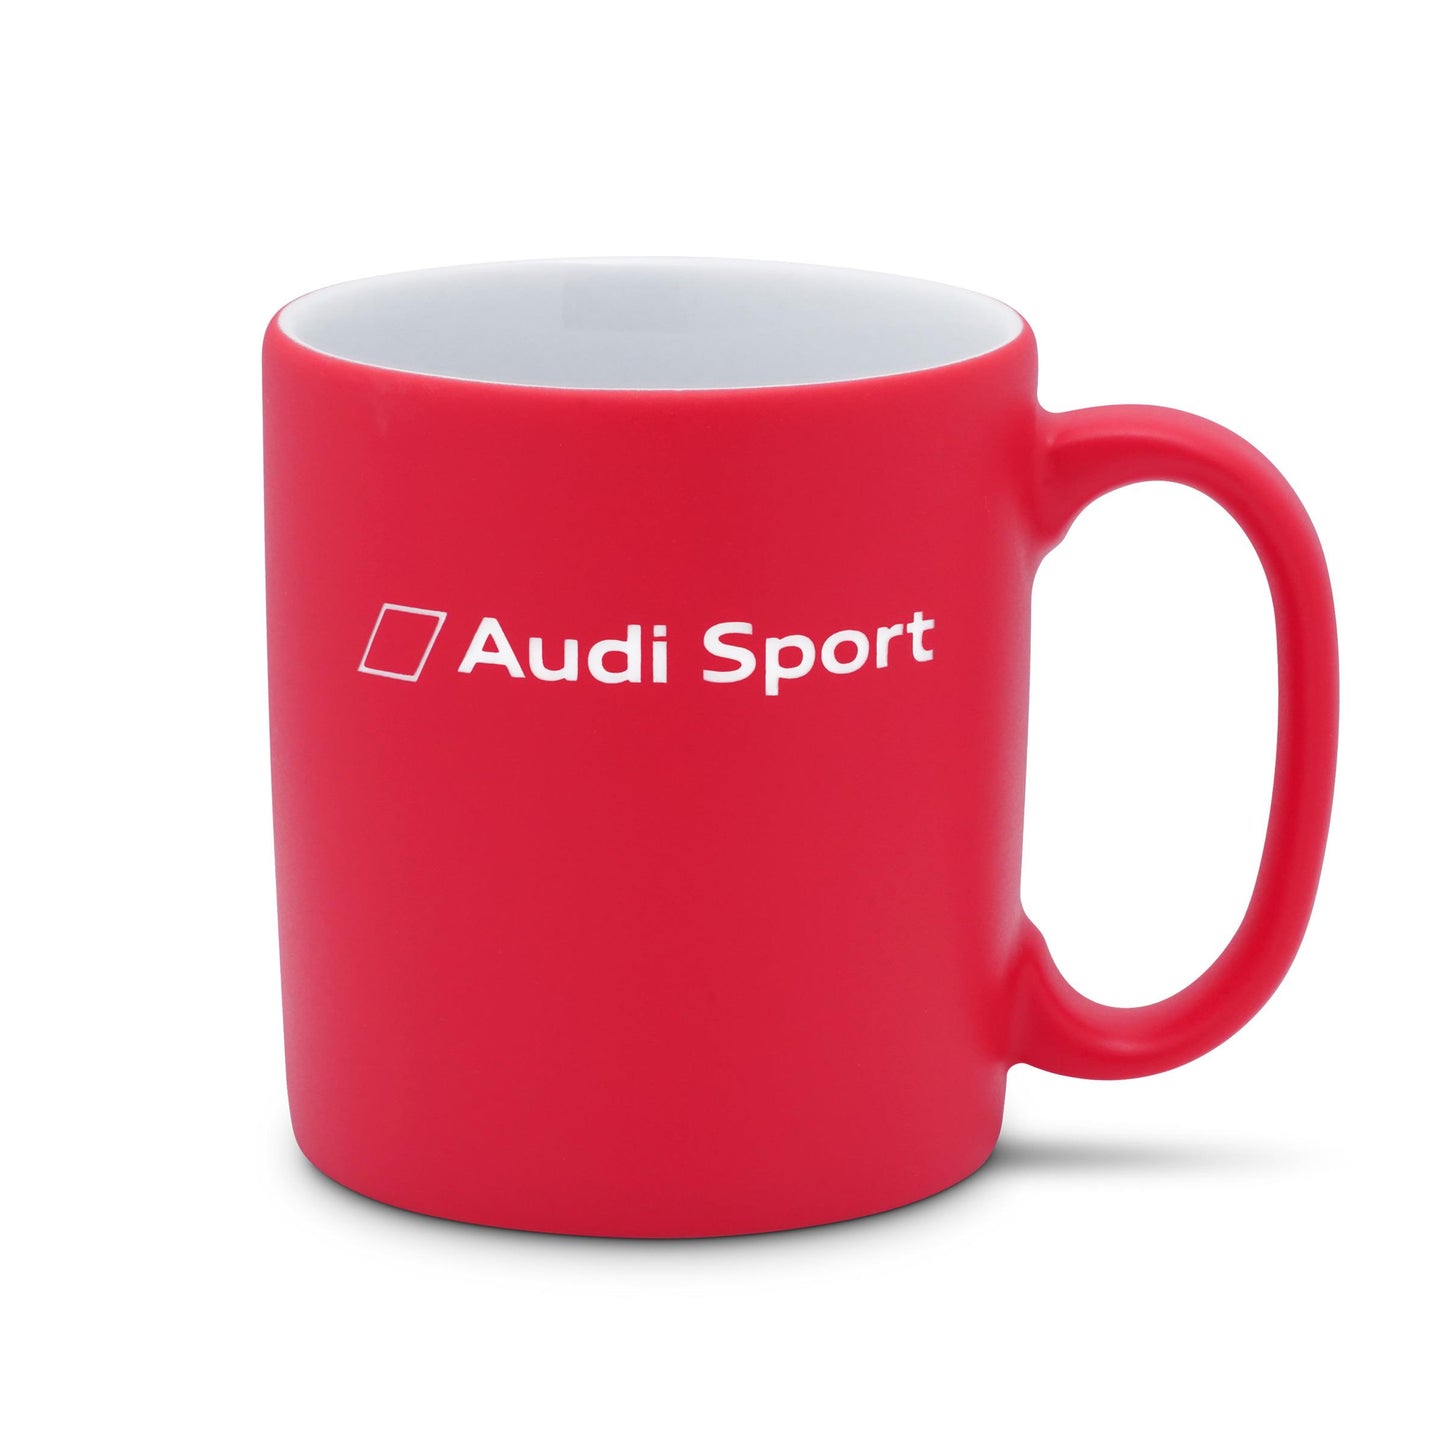 Audi Sport Mug, red